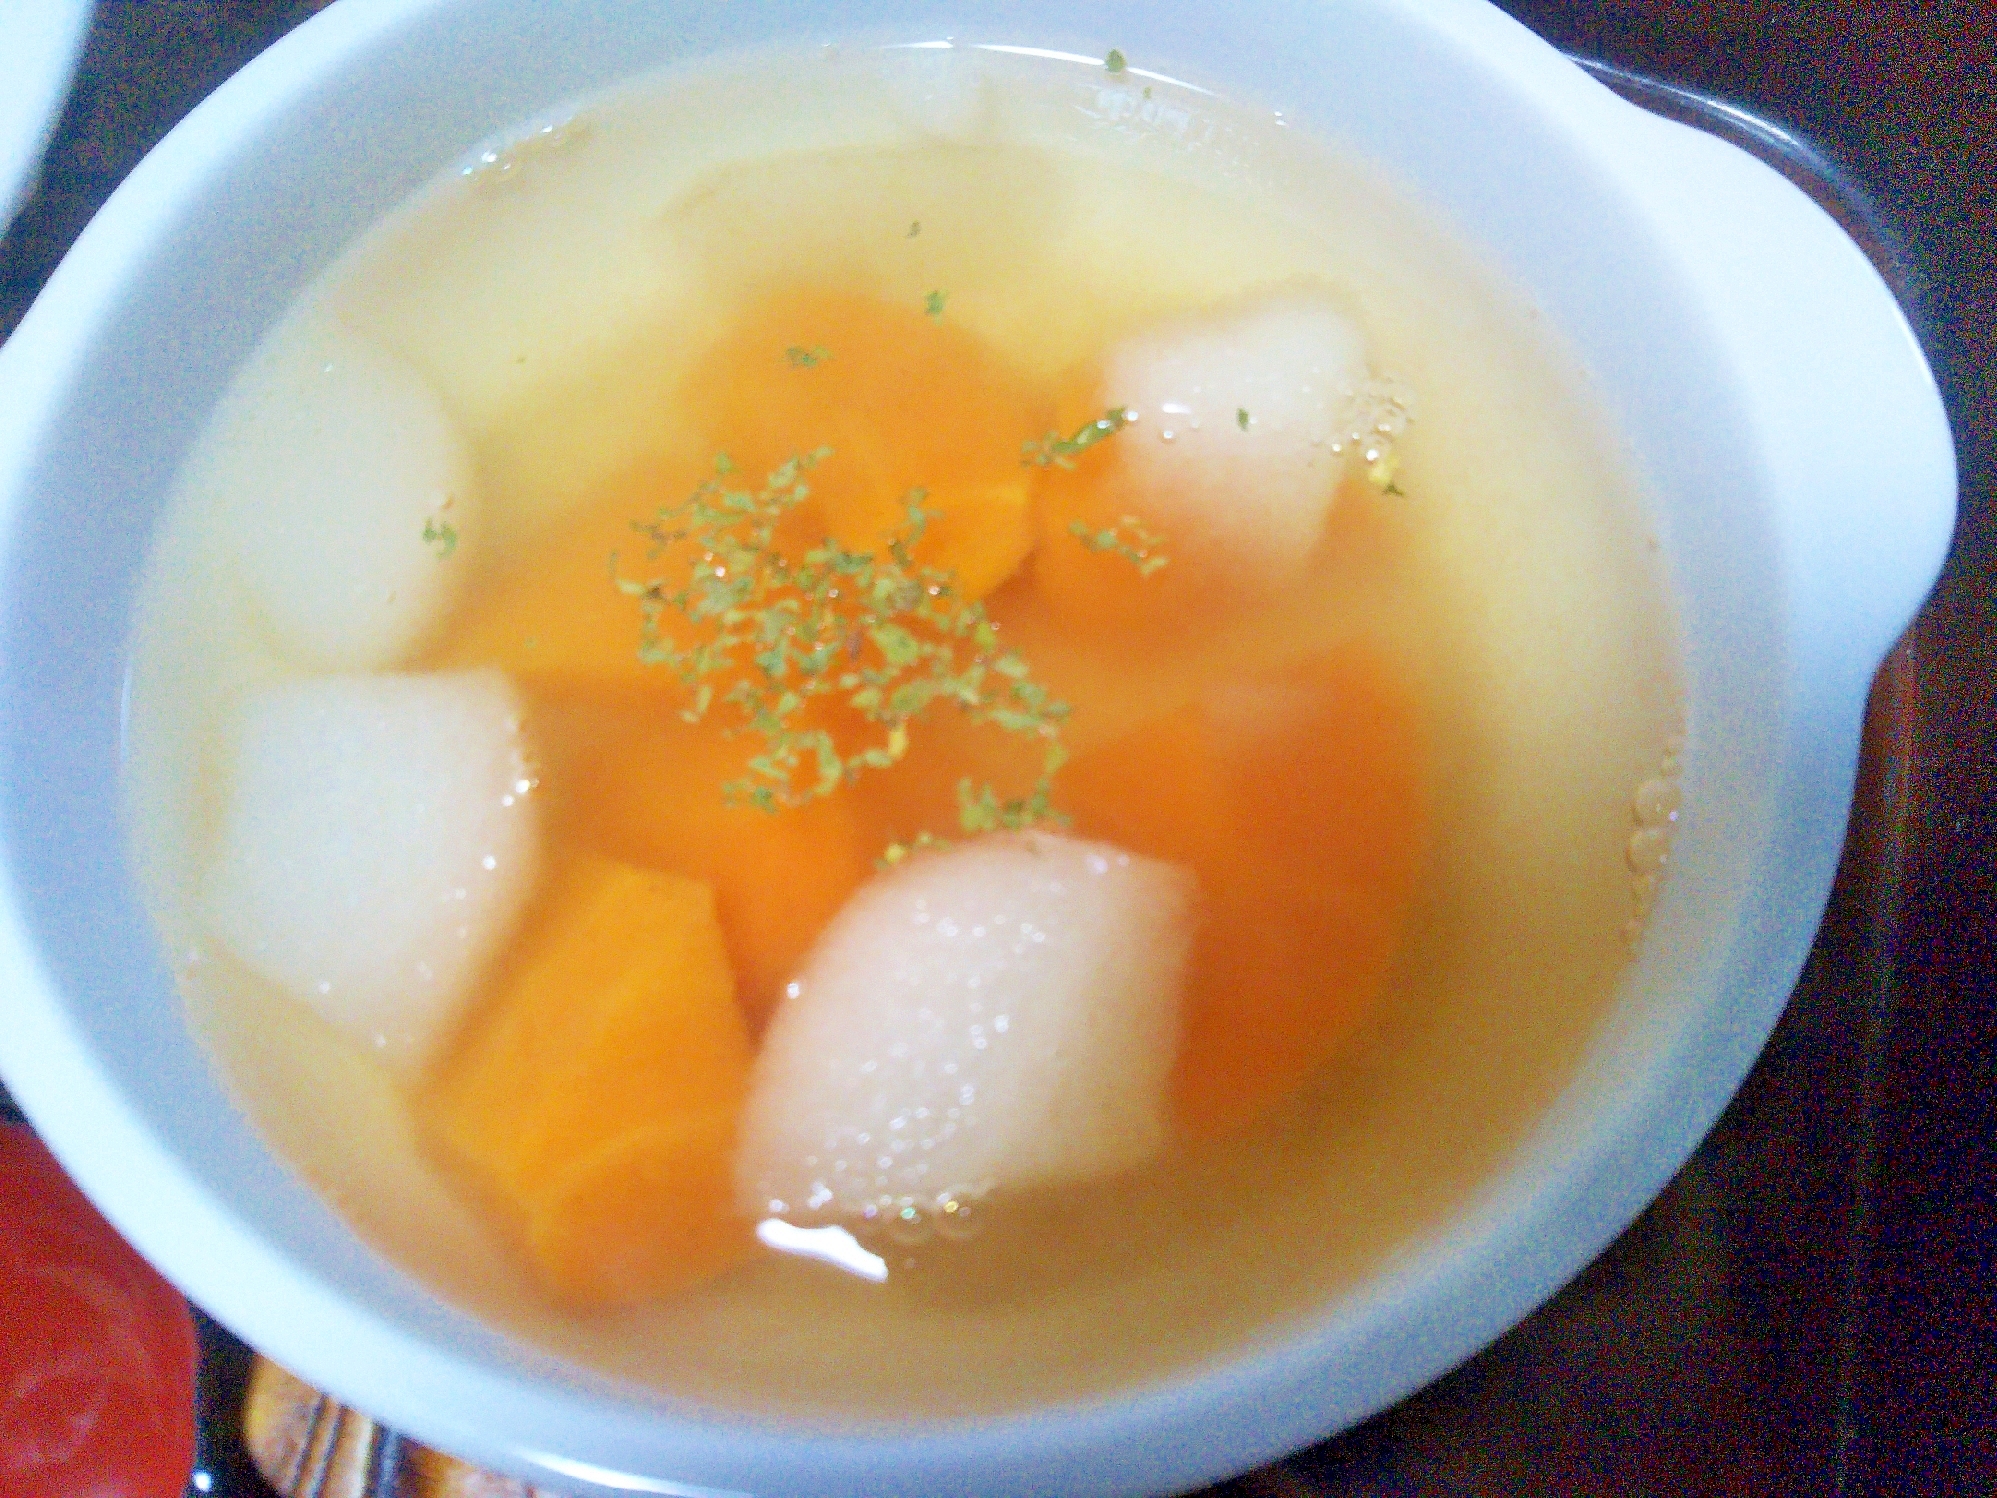 梨&人参の彩りスープ